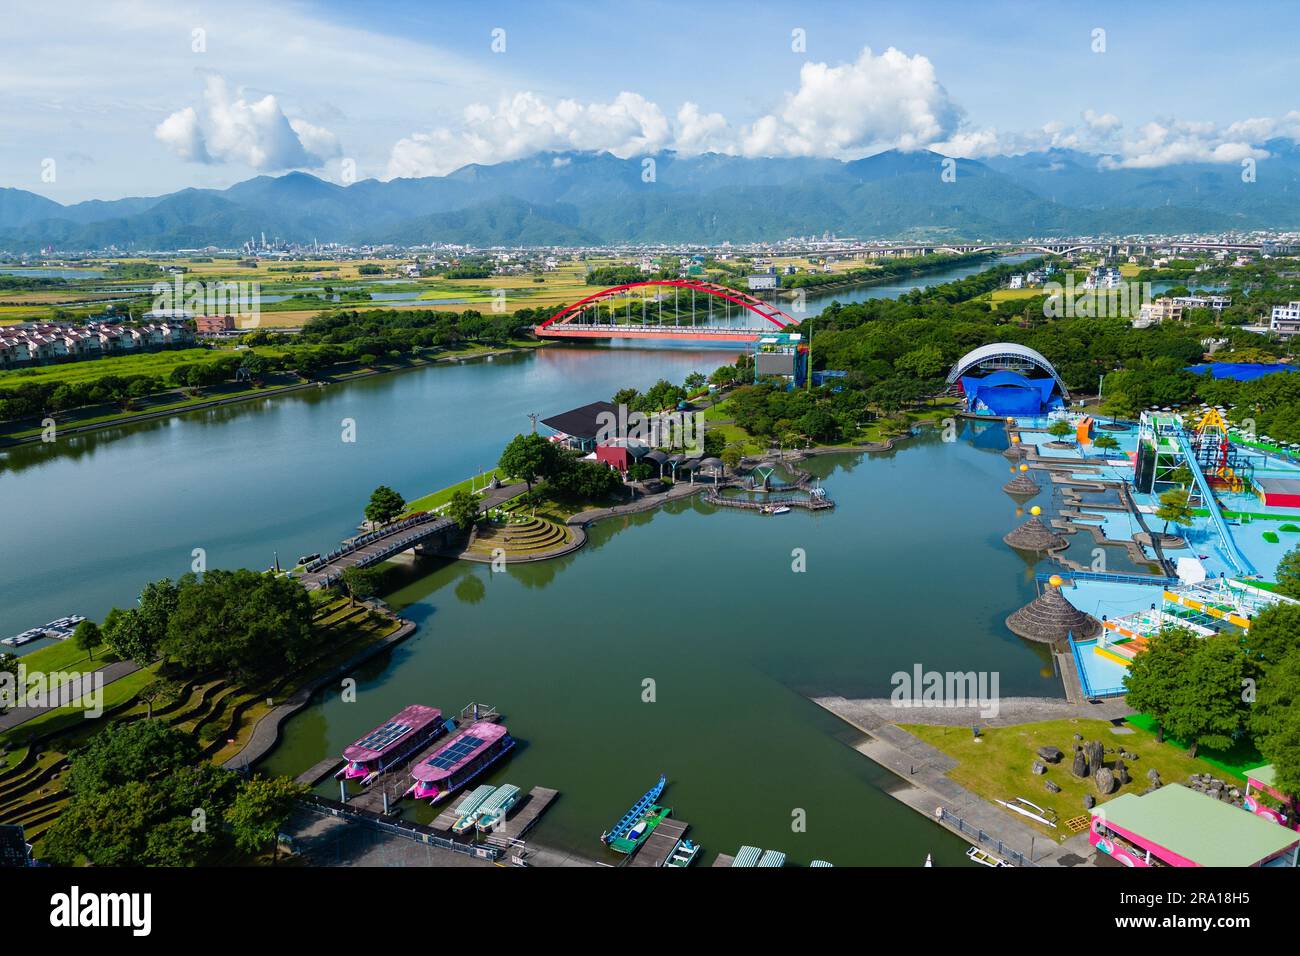 Dongshan River Water Park in Yilan, Taiwan Stock Photo